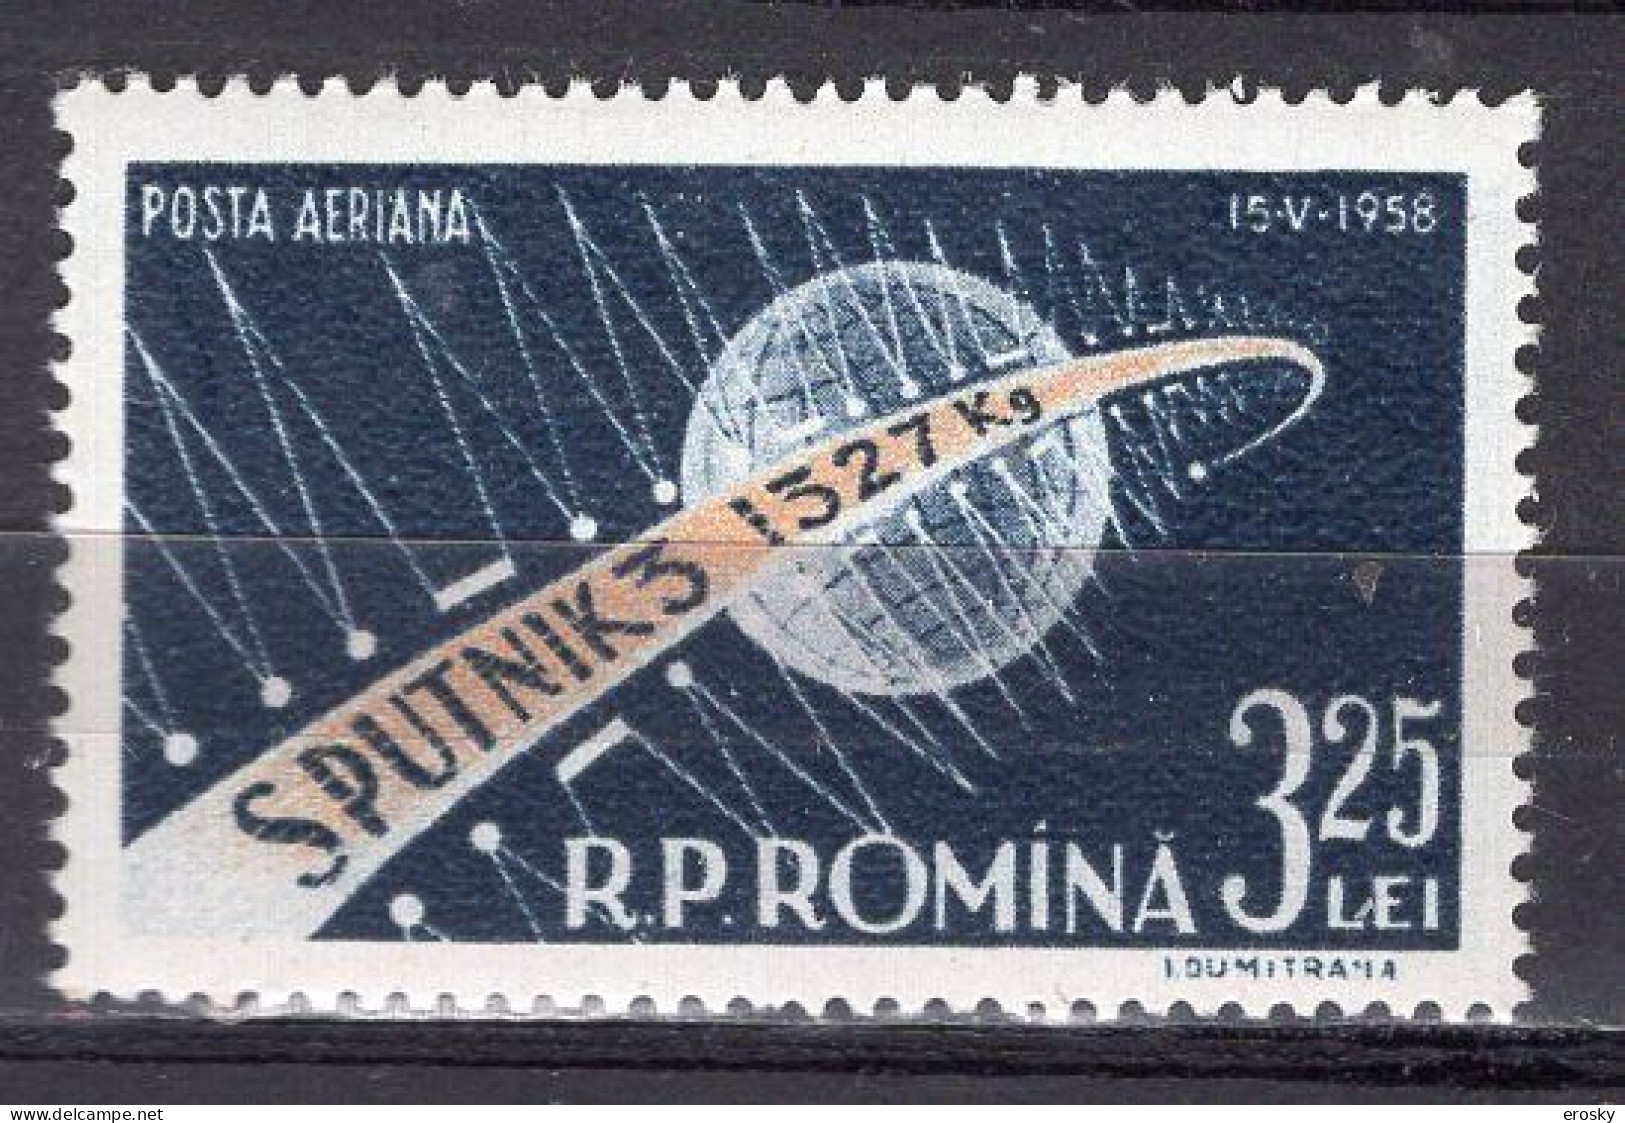 S2505 - ROMANIA ROUMANIE AERIENNE Yv N°87 ** ESPACE SPACE - Neufs